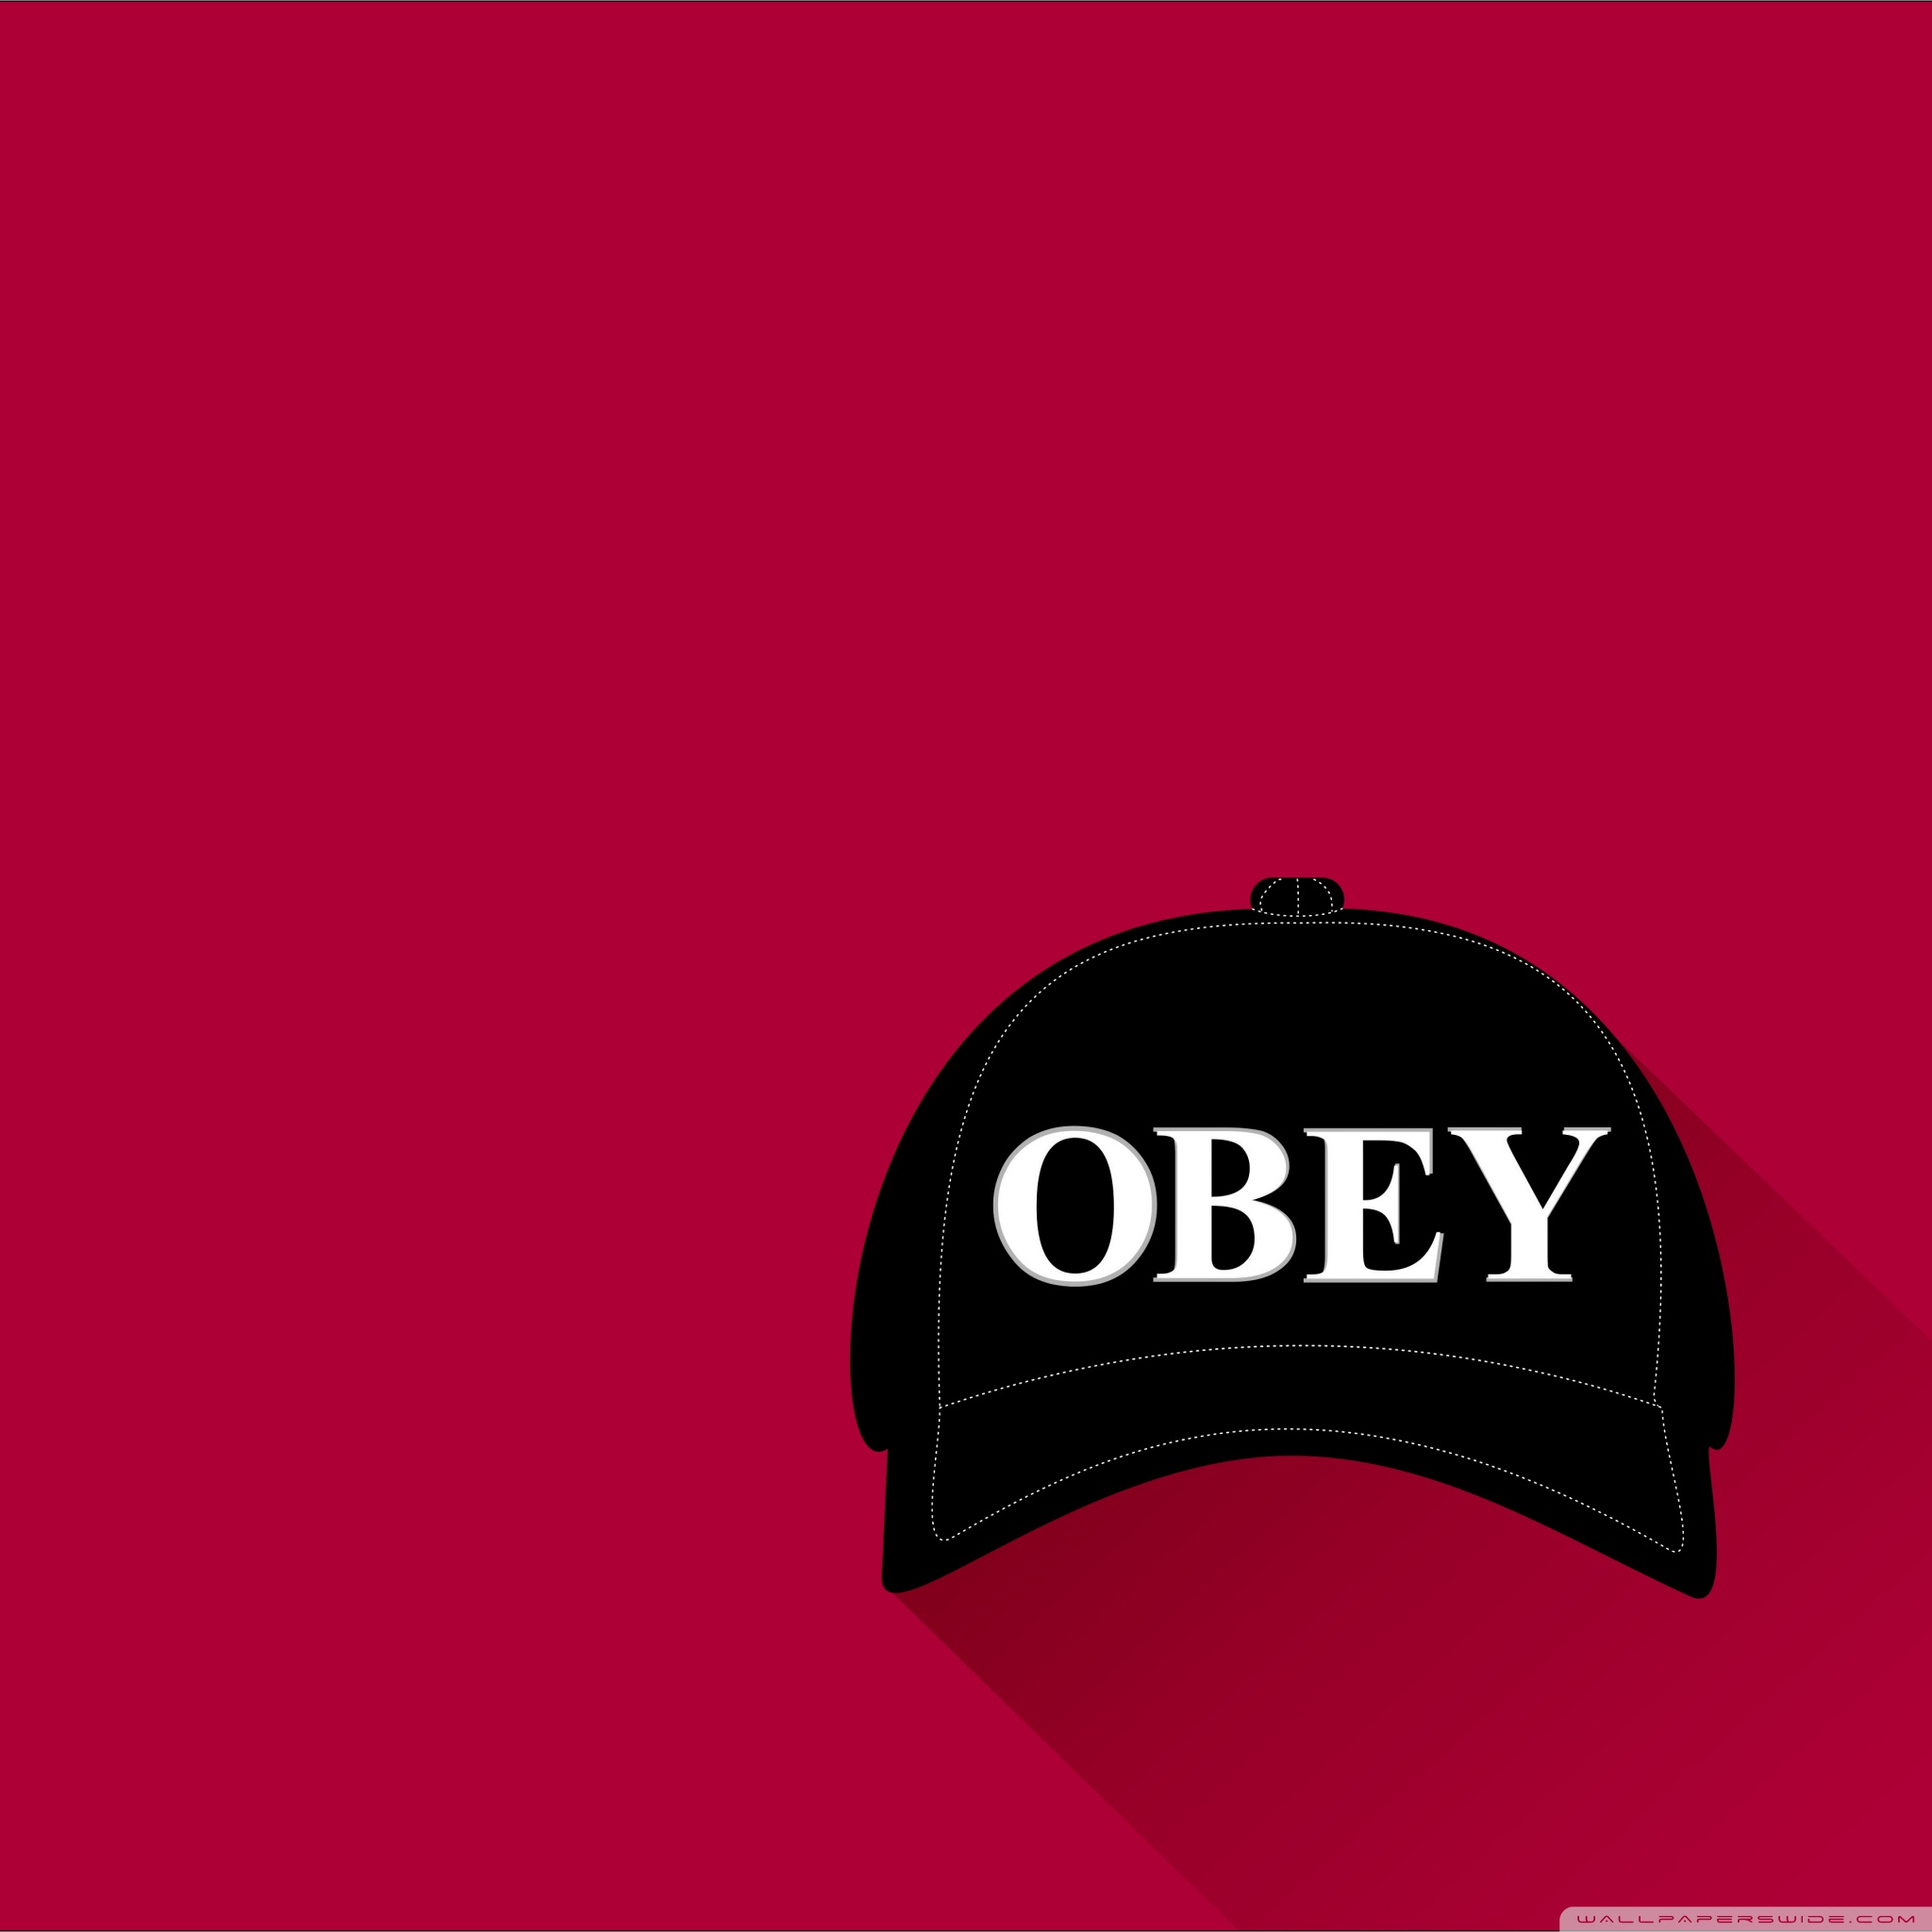 Obey Ultra HD Desktop Background